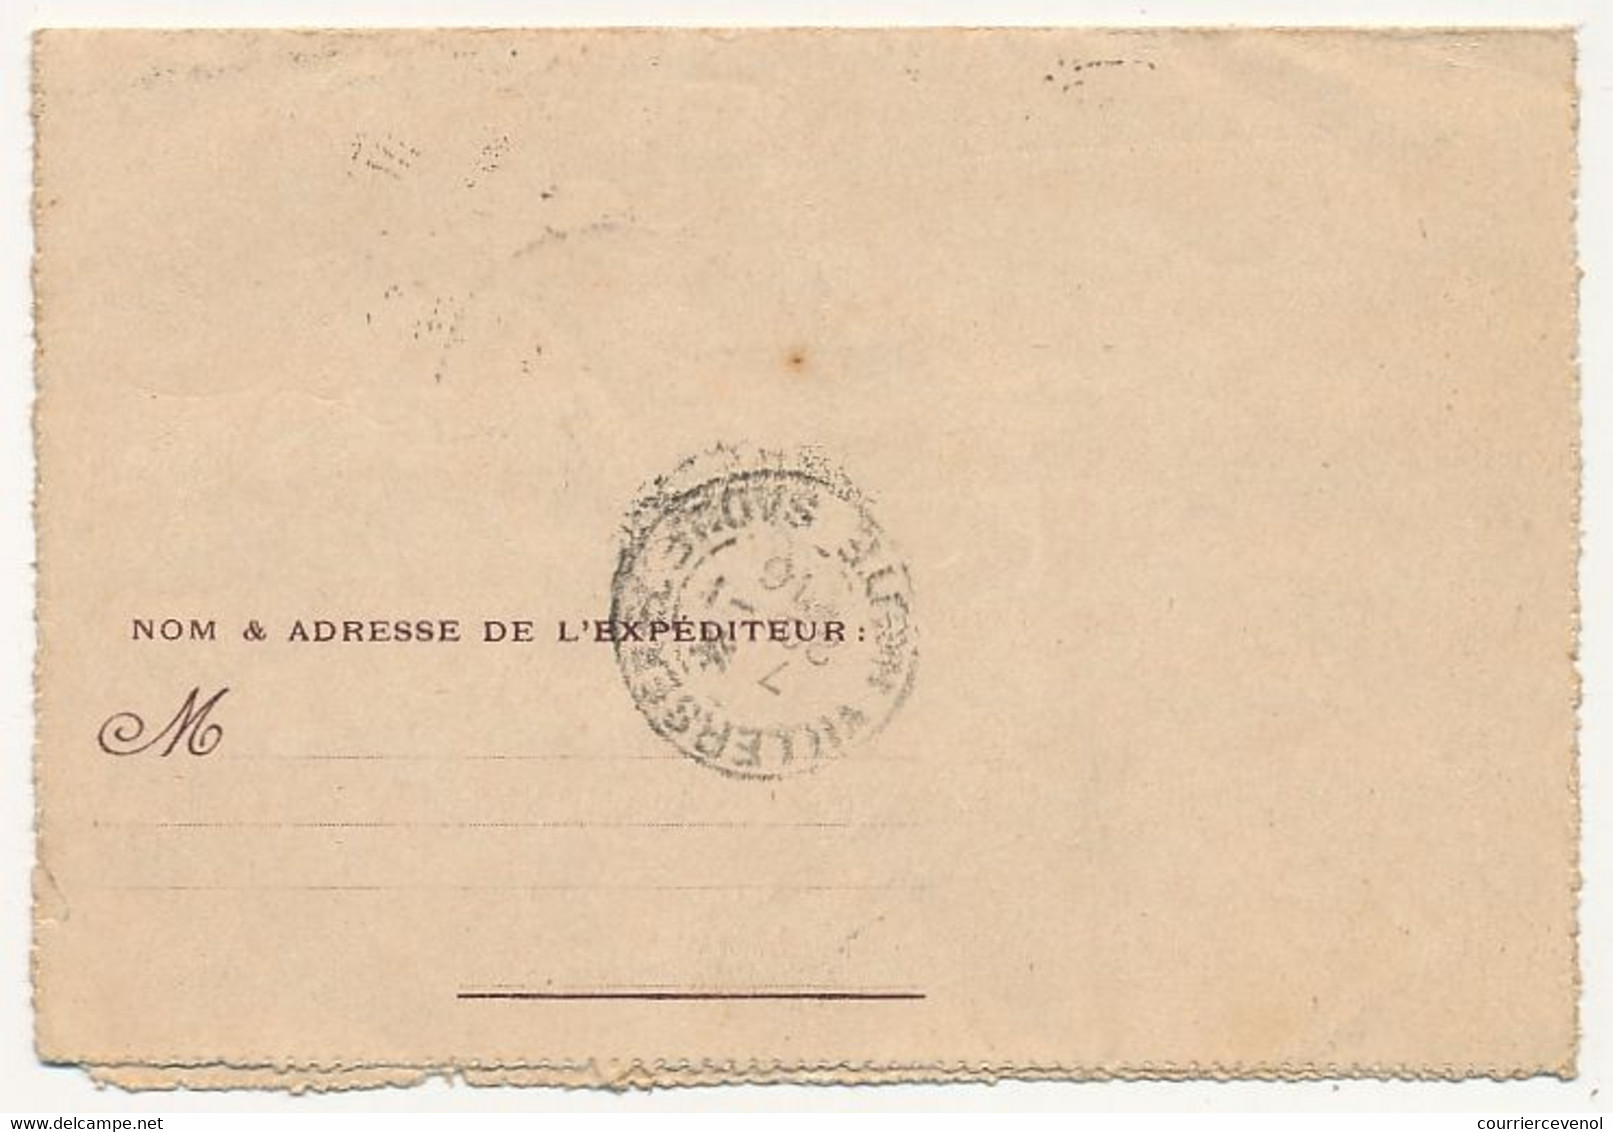 Carte-lettre FM - Carte Lettre De L'Espérance, "Pour La Patrie" (Aéroplane) - Voyagée 1916 - Briefe U. Dokumente